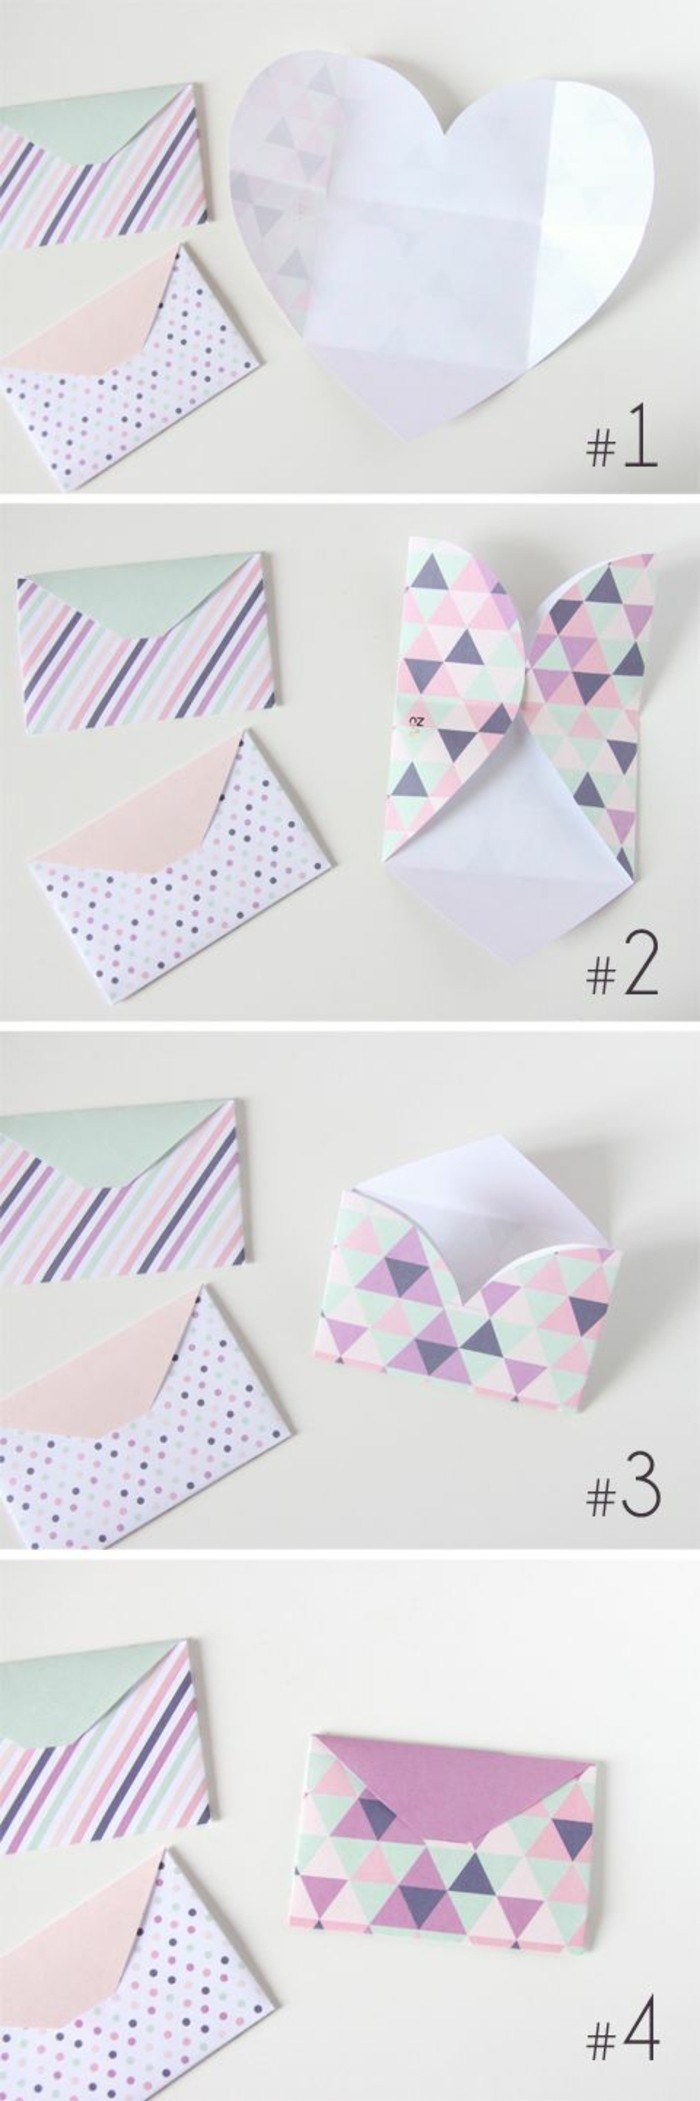 papier-en-forme-de-coeur-pour-fabriquer-une-enveloppe-originale-et-coloree-idee-pliage-enveloppe